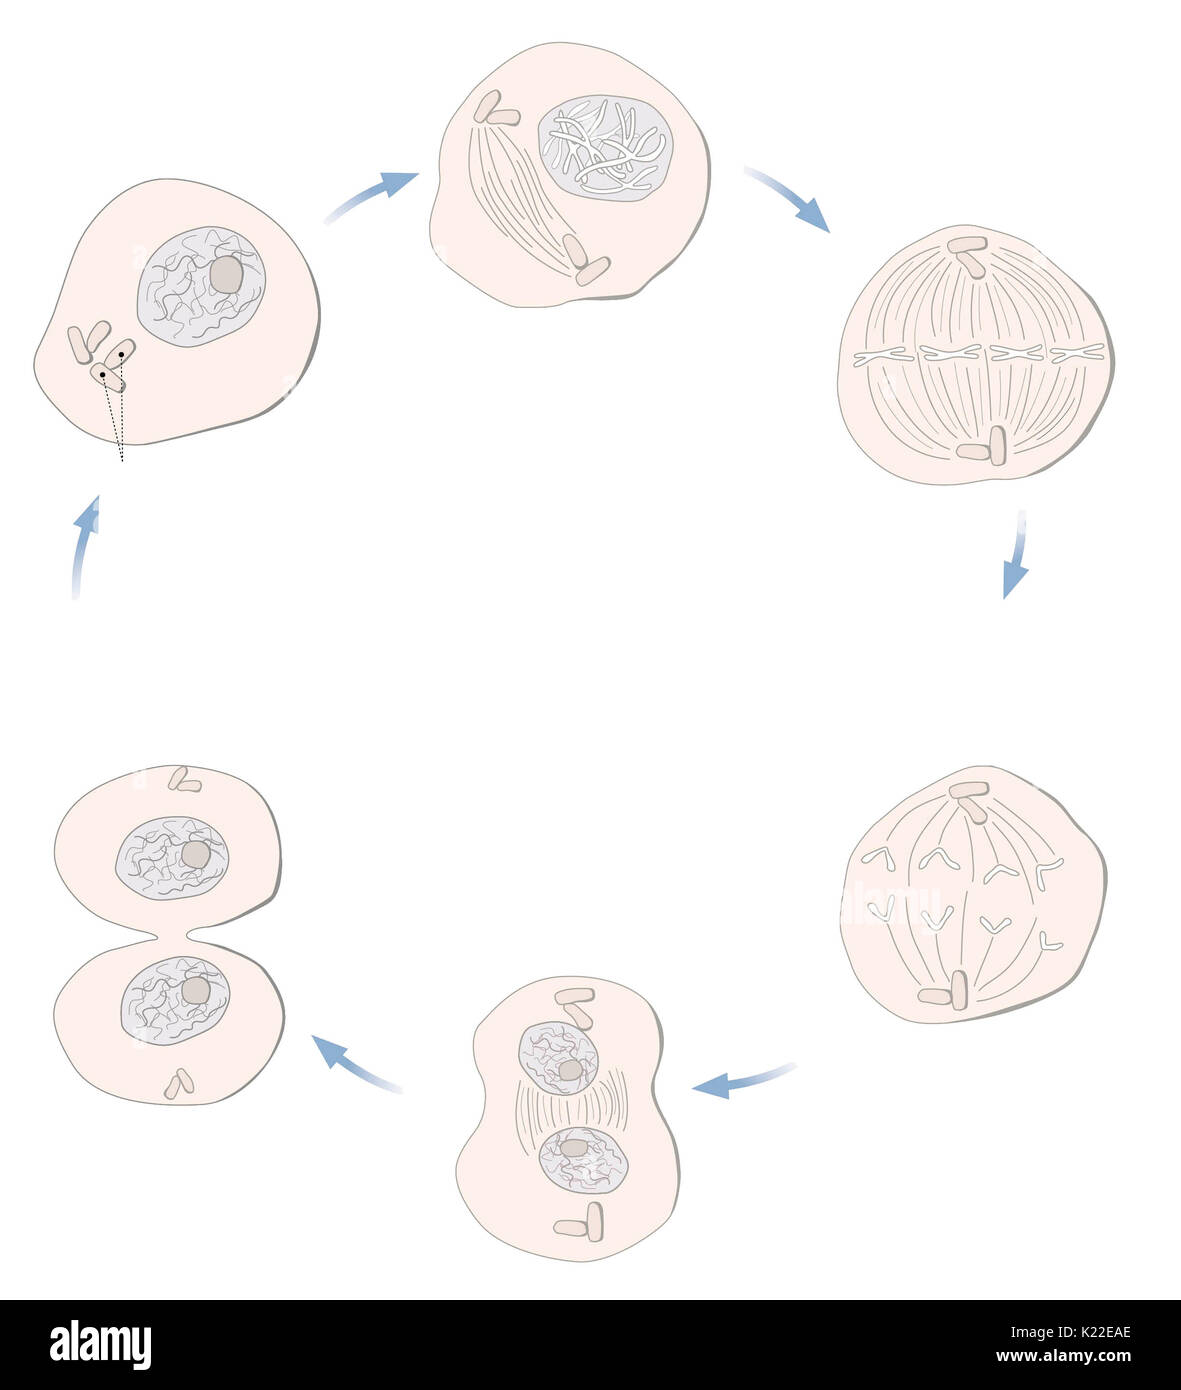 Alle Mechanismen der Zellteilung, die Bildung von zwei identische Tochterzellen aus einer Mutterzelle ermöglichen. Stockfoto